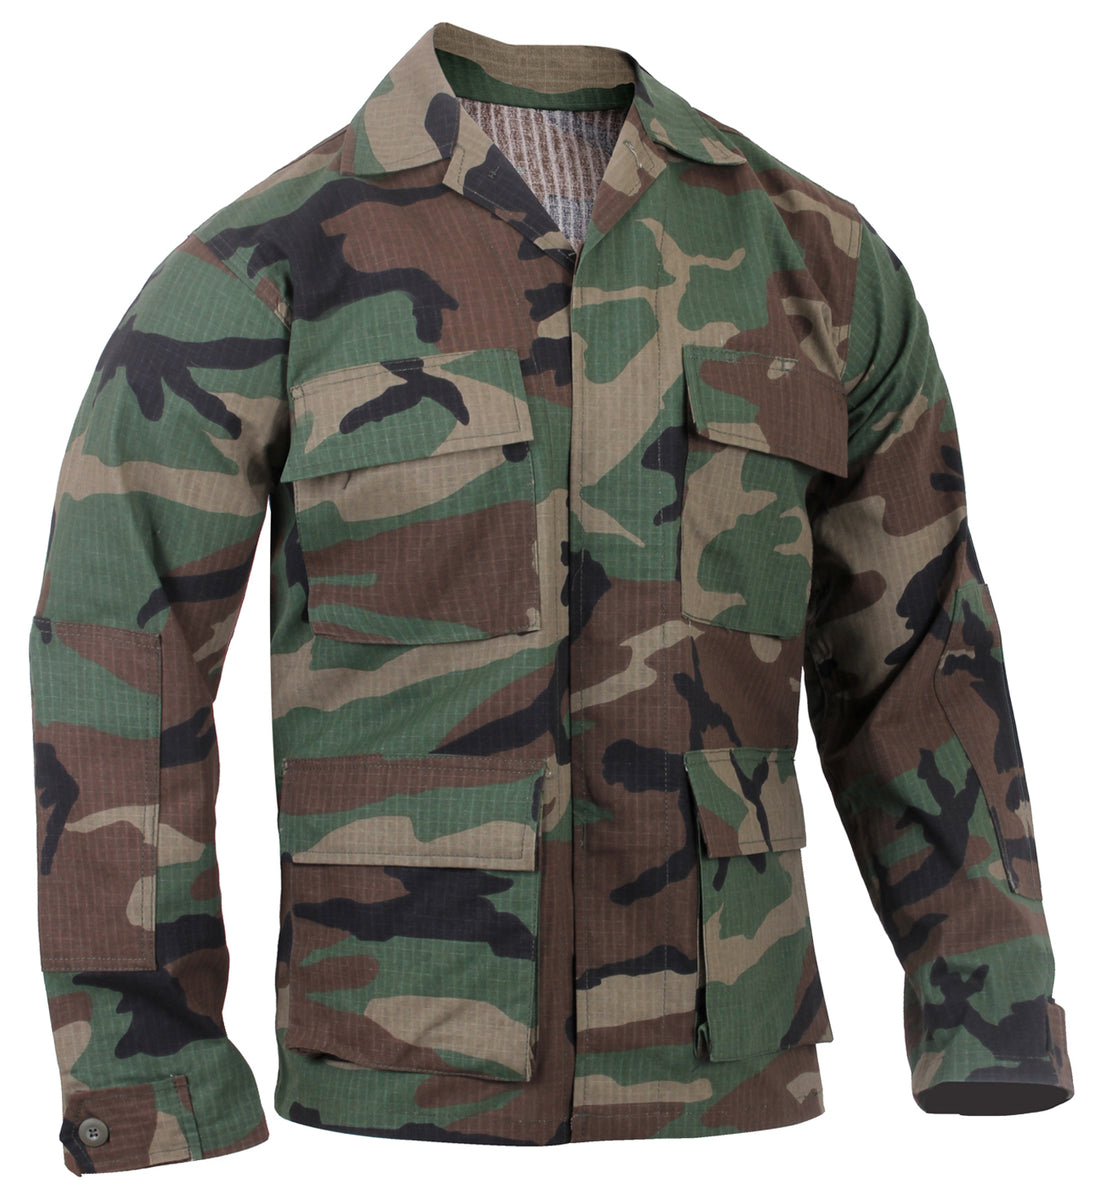 U.S. Army Fatigue Shirt - Woodland Camo